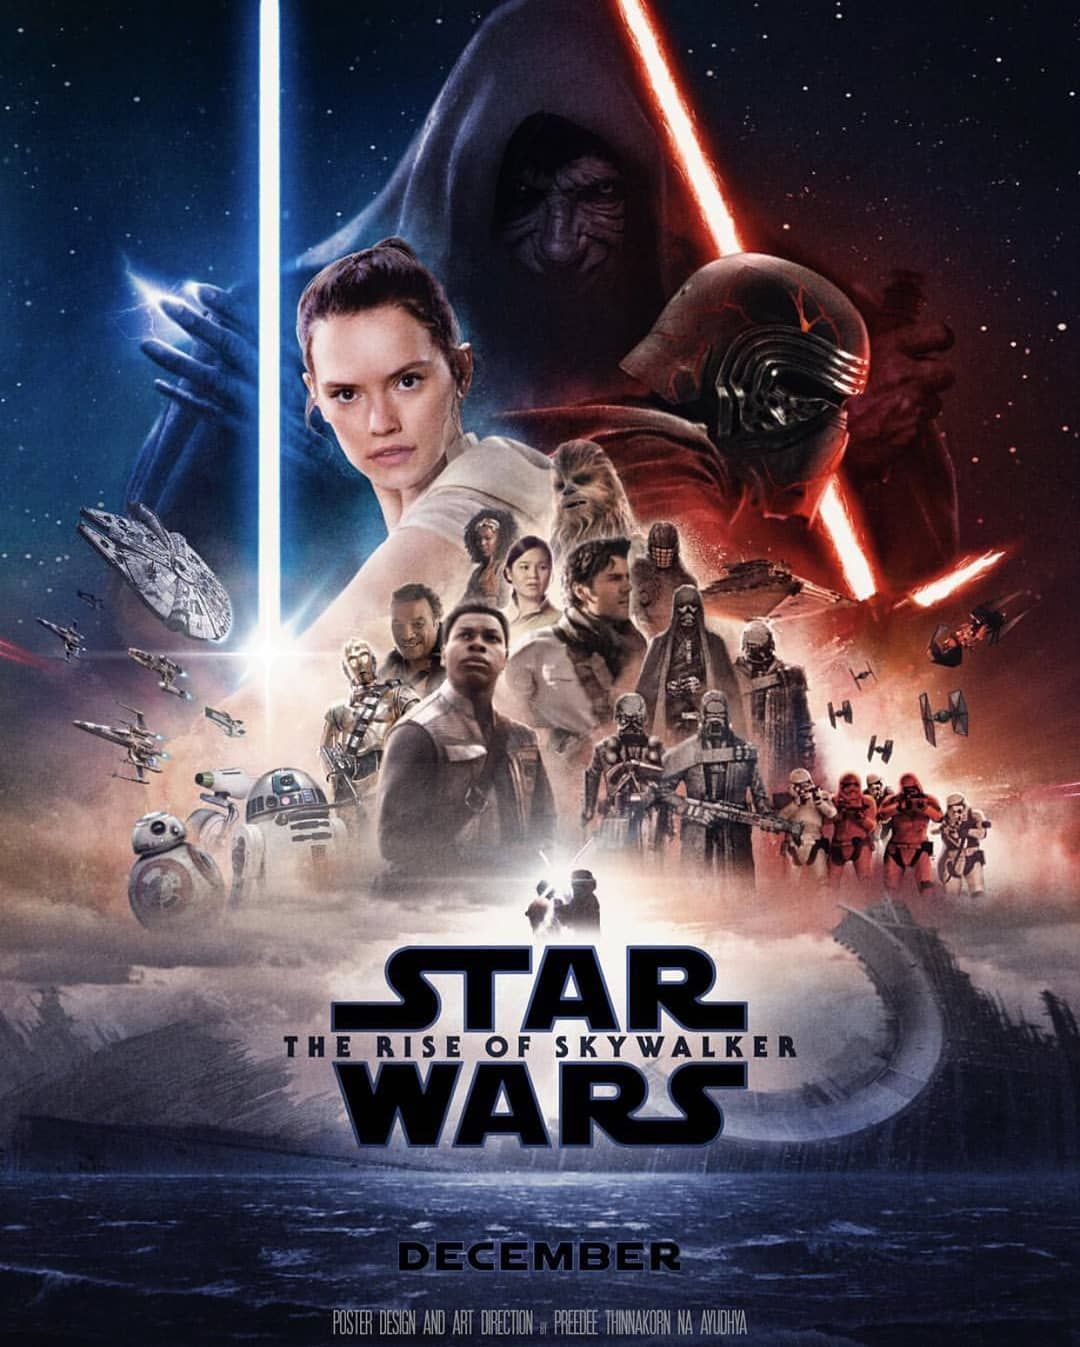 Star Wars - Episode IX - L'ascension de Skywalker - Le roman du film